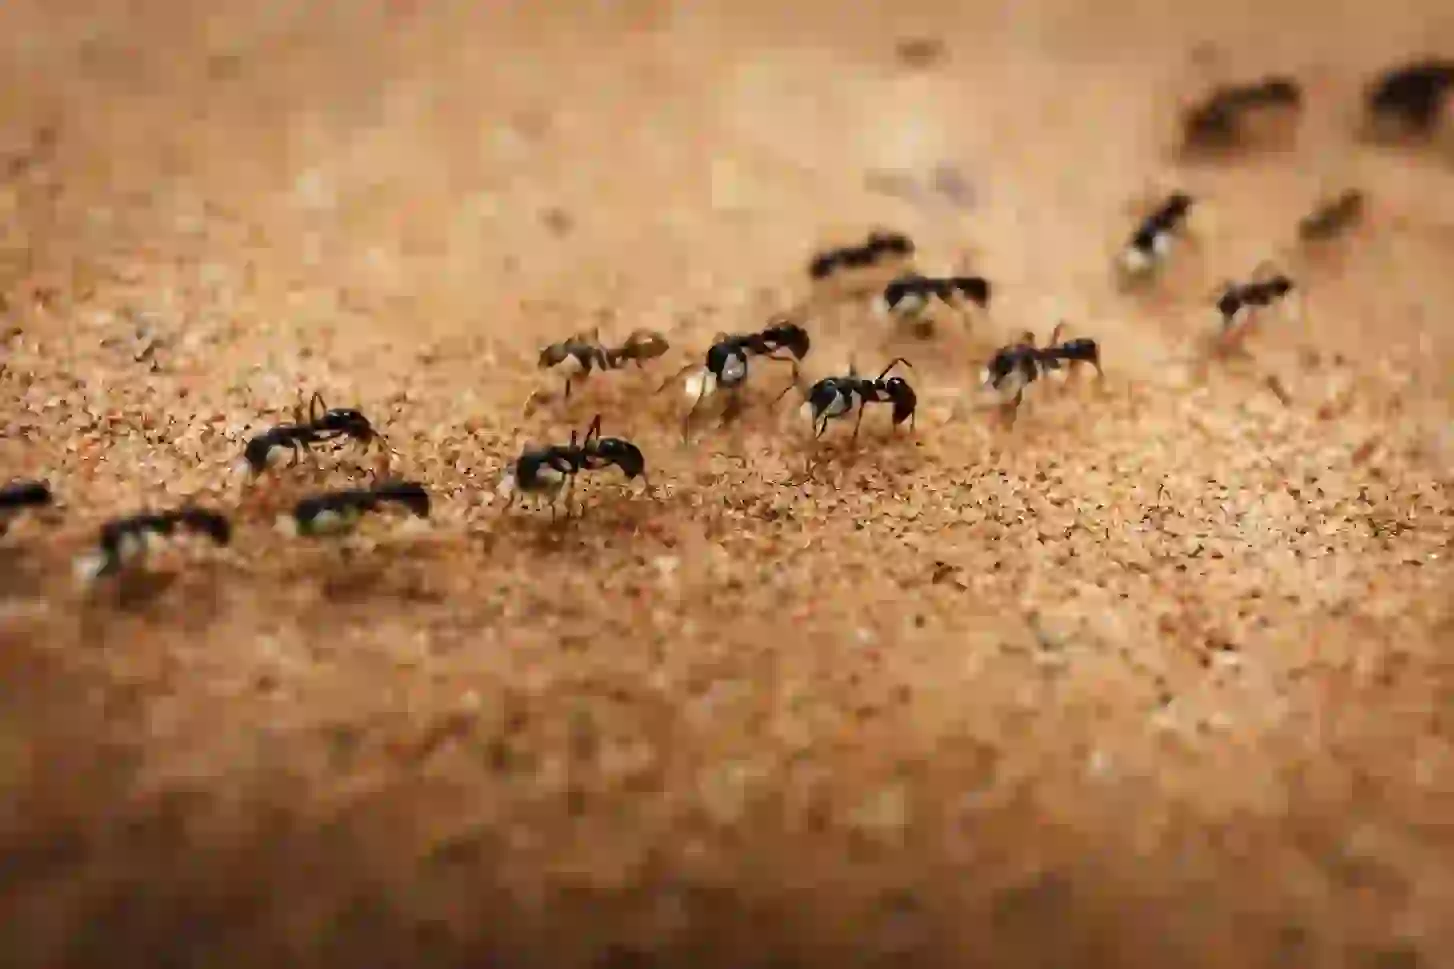 Ants - pest control in dubai